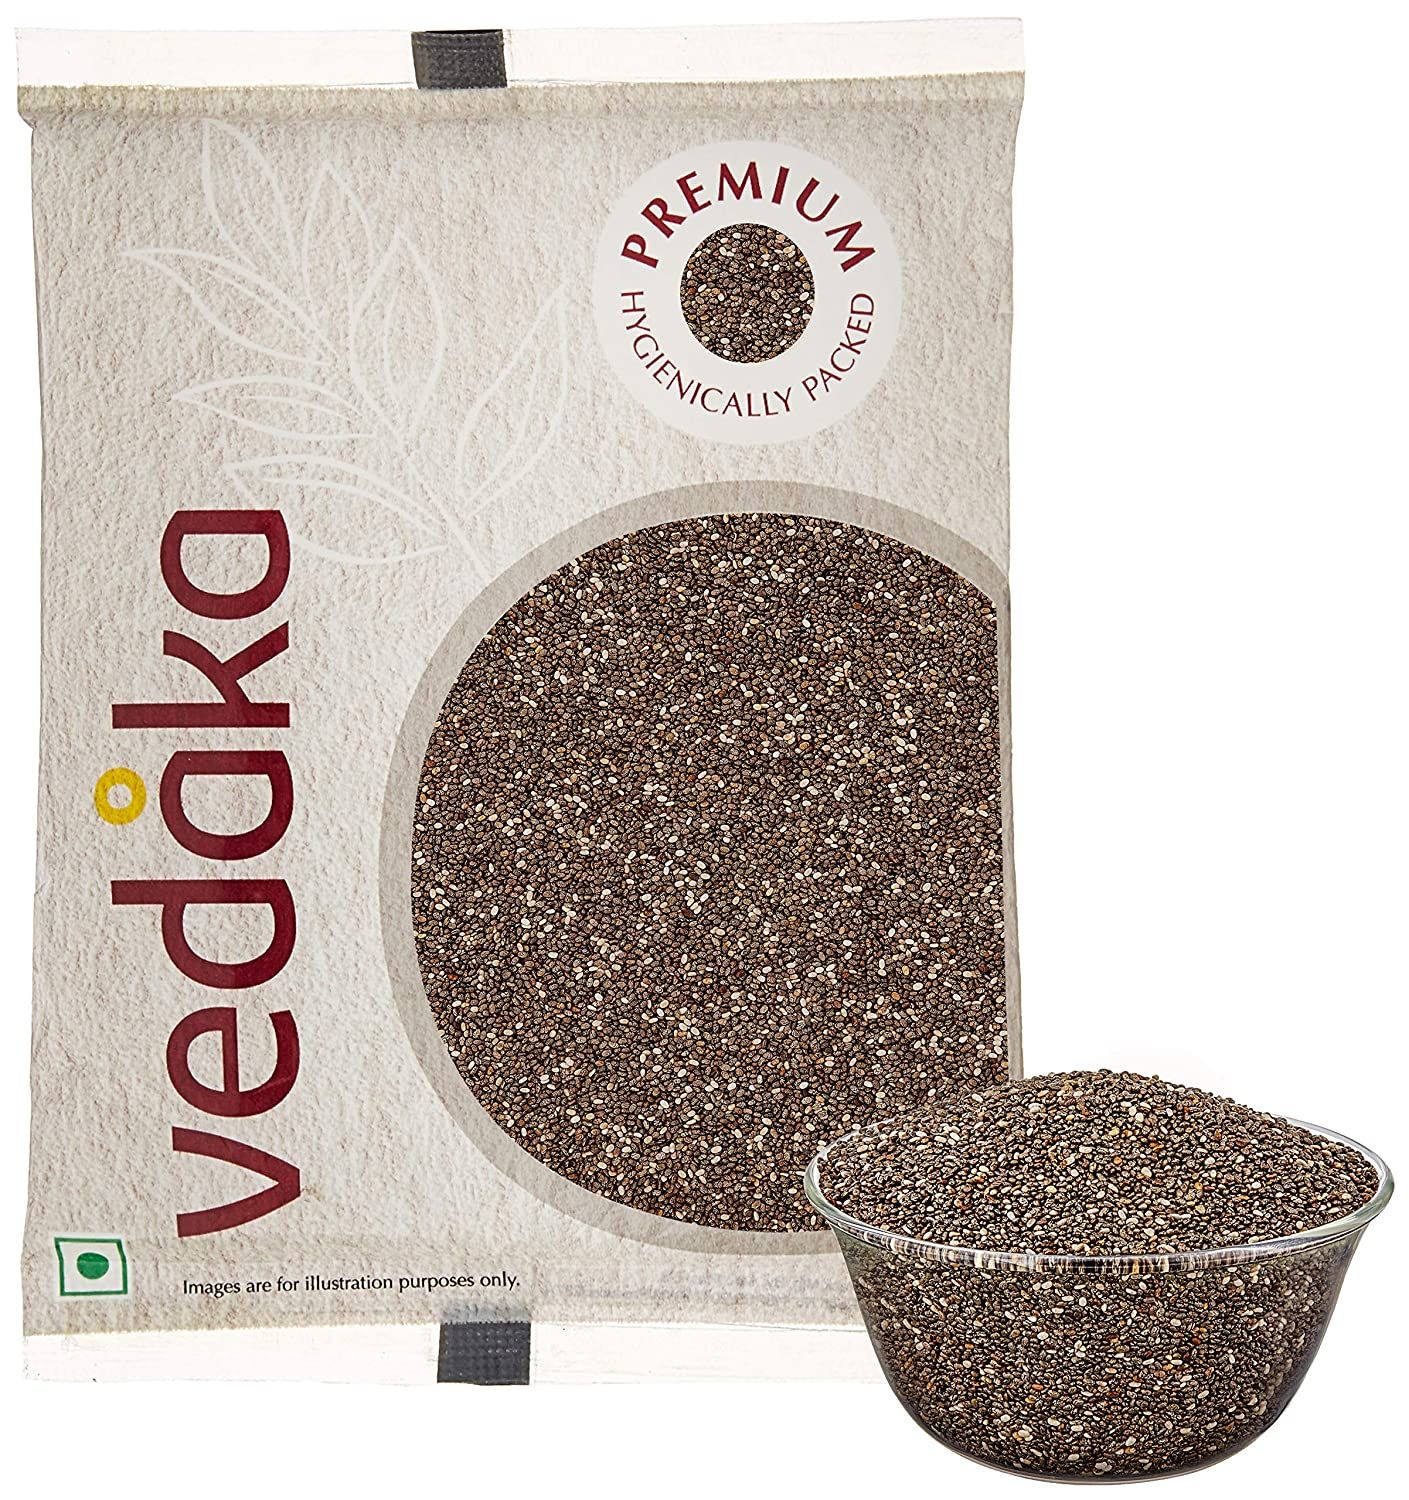 Vedaka Premium Raw Chia Seeds Image